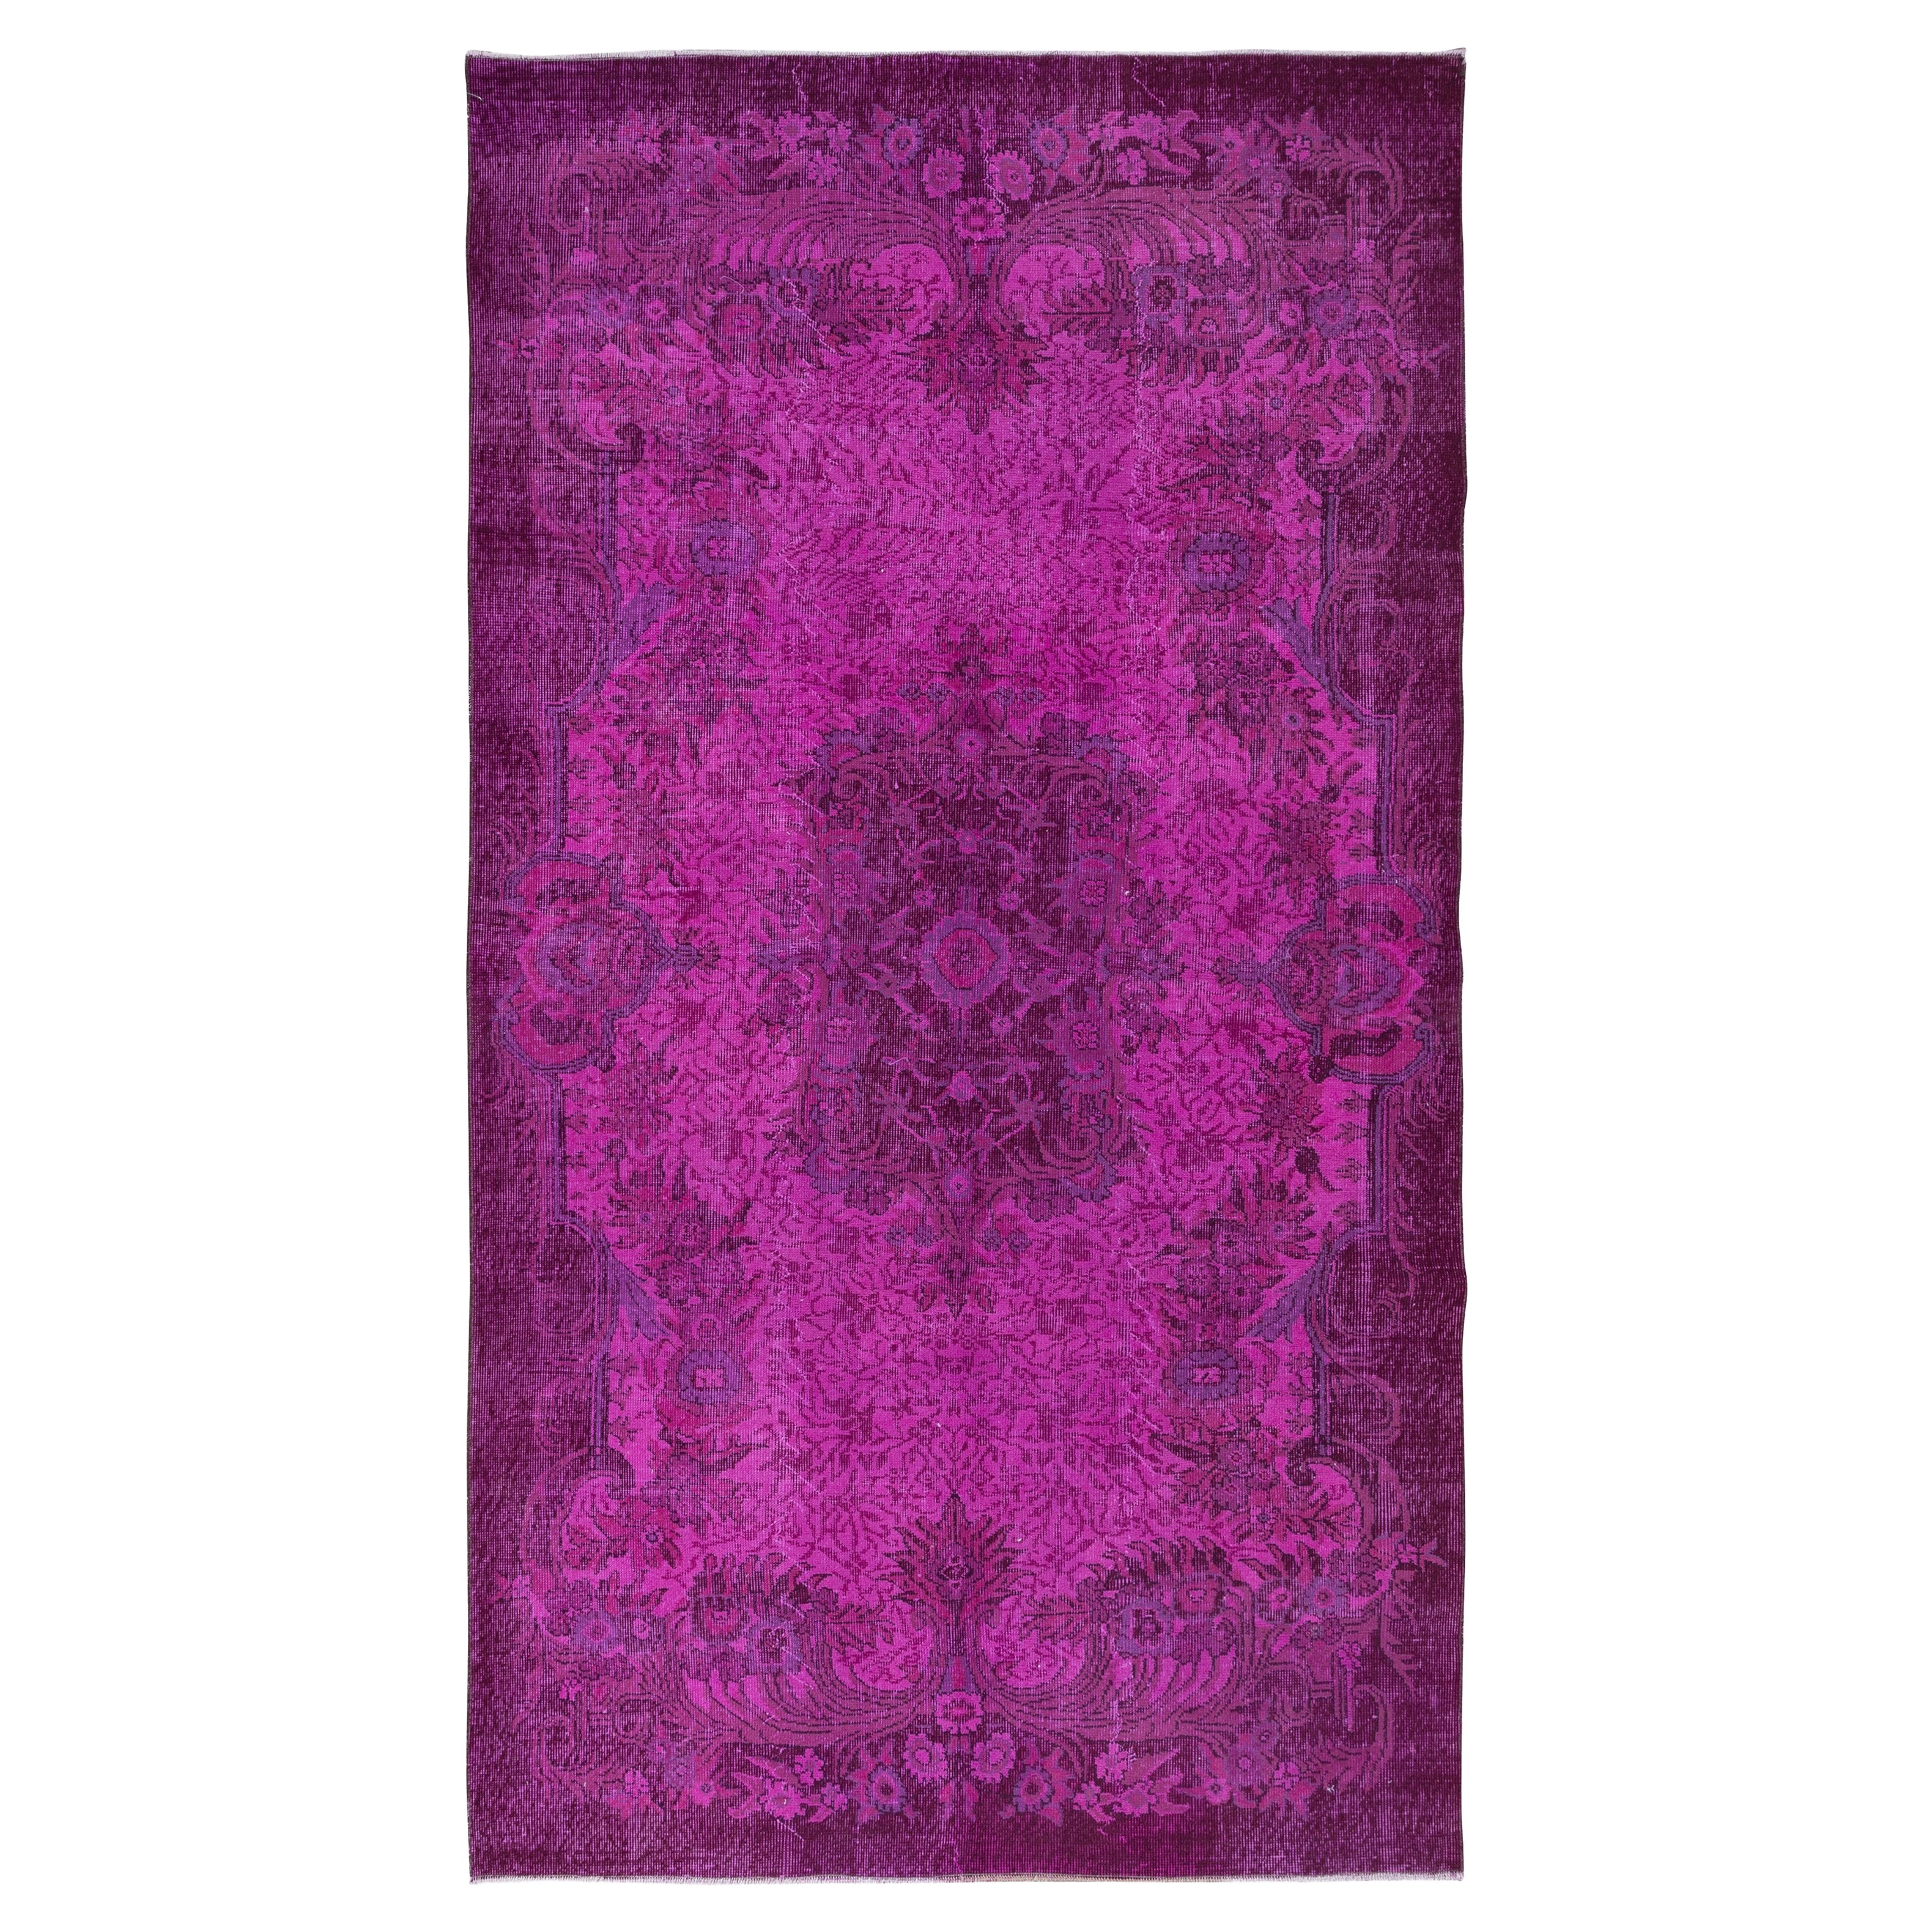 5,4x9.7 Ft prächtiger handgefertigter rosafarbener Teppich, moderner türkischer Wohnzimmerteppich